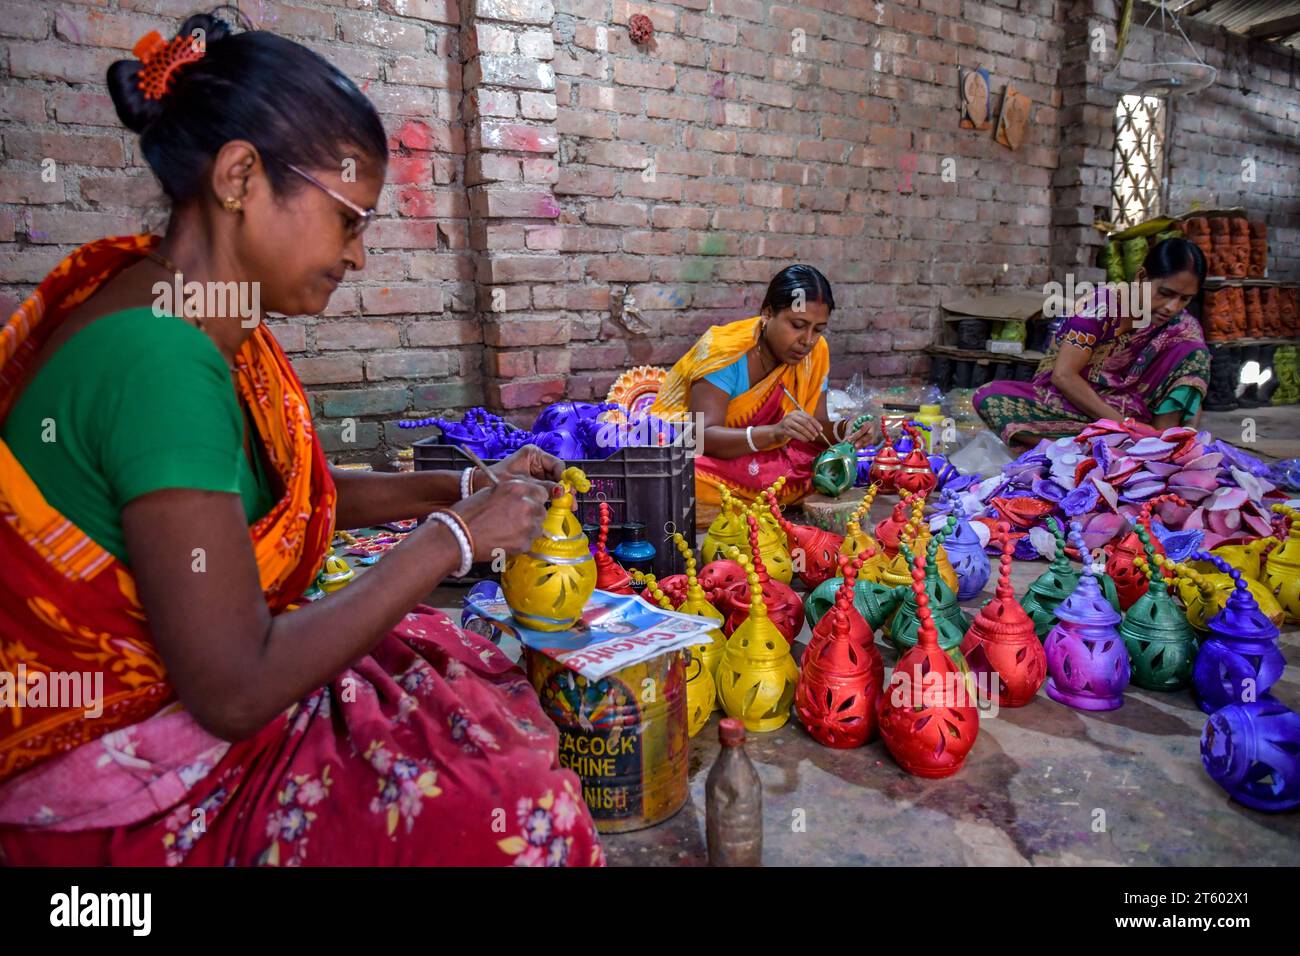 Im Töpferdorf Chaltaberia, rund 40 km von Kalkutta in Westbengalen, färben sich Arbeiterinnen Erdlampen aus. Das ganze Dorf ist im vollen Rhythmus der irdenen Lampen- und Idol-Produktion vor dem Diwali-Festival in Indien. Erdlampen werden in allen indischen Städten verkauft, wie Kalkutta, Delhi, Mumbai, Hyderabad, Gujarat, Assam, Patna und Rajasthan, besonders während der Festivalsaison. Sogar Erdlampen werden vor den Diwali-Feiern nach außerhalb Indiens exportiert. Stockfoto